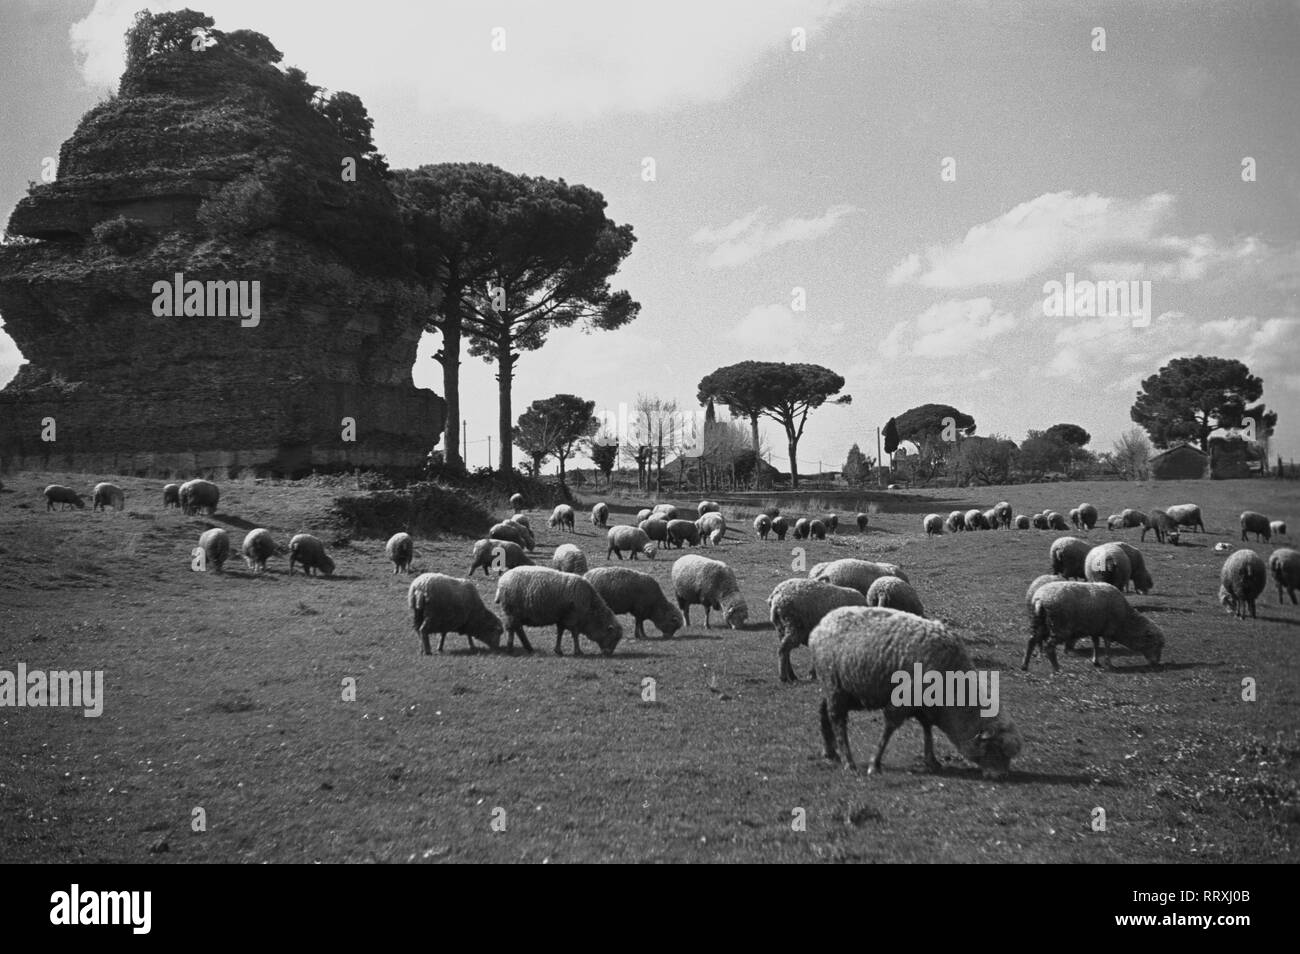 Reisen nach Rom - Italien Ende der 1950er Jahre - Schafe Herde in der Lateinischen Gräber, Via Appia Antica in Rom. Schafe weiden an der Via Appia Antica in Rom, Italien. Foto Erich Andres. Stockfoto